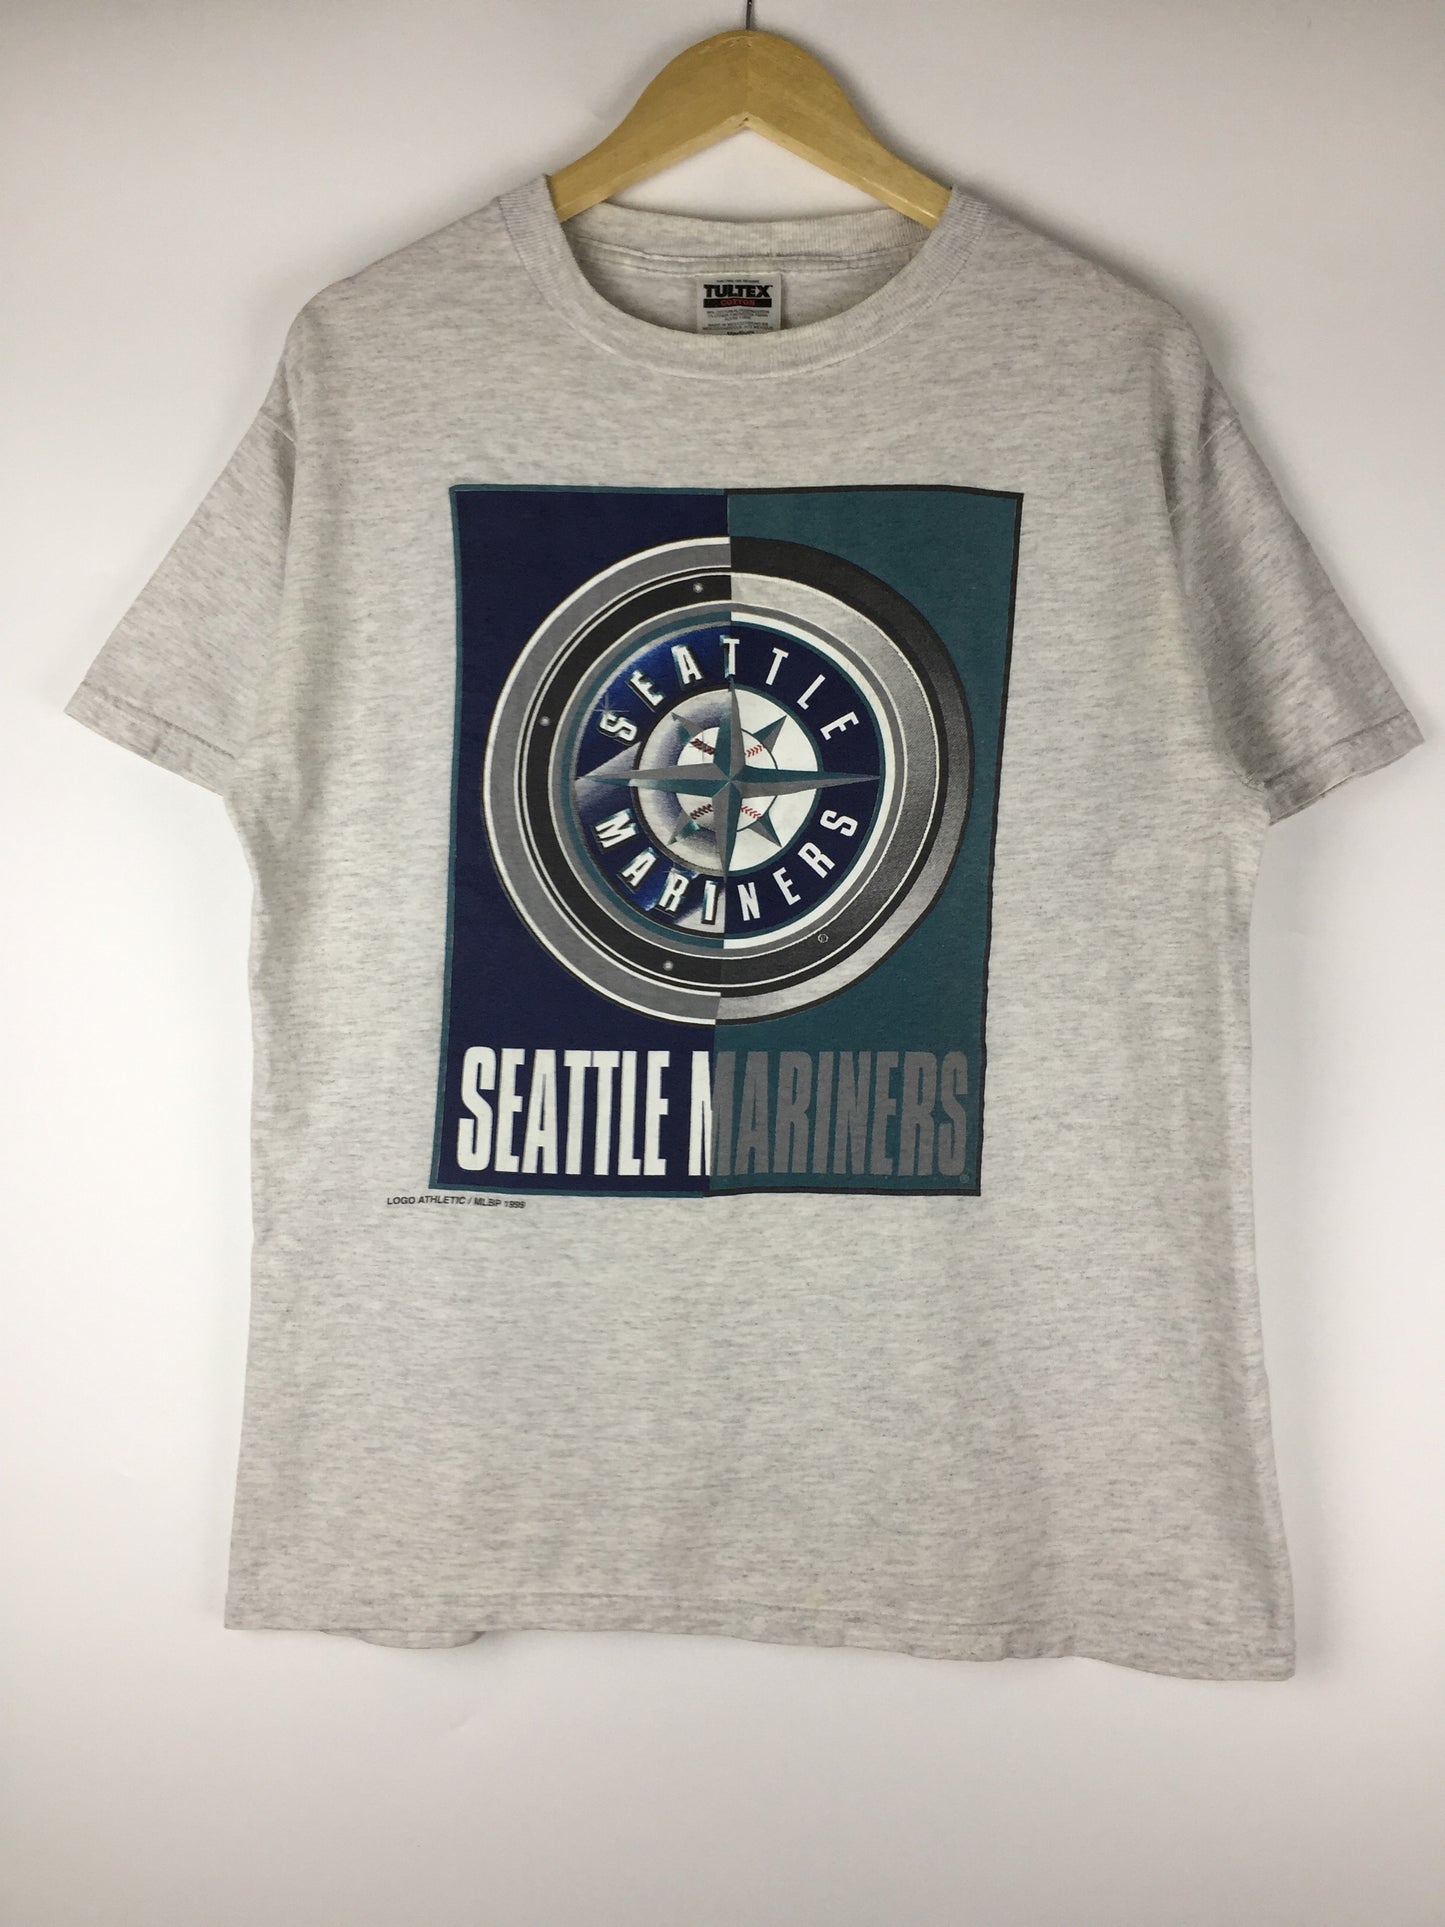 Vintage Seattle Mariners MLB team 1999 T-shirt